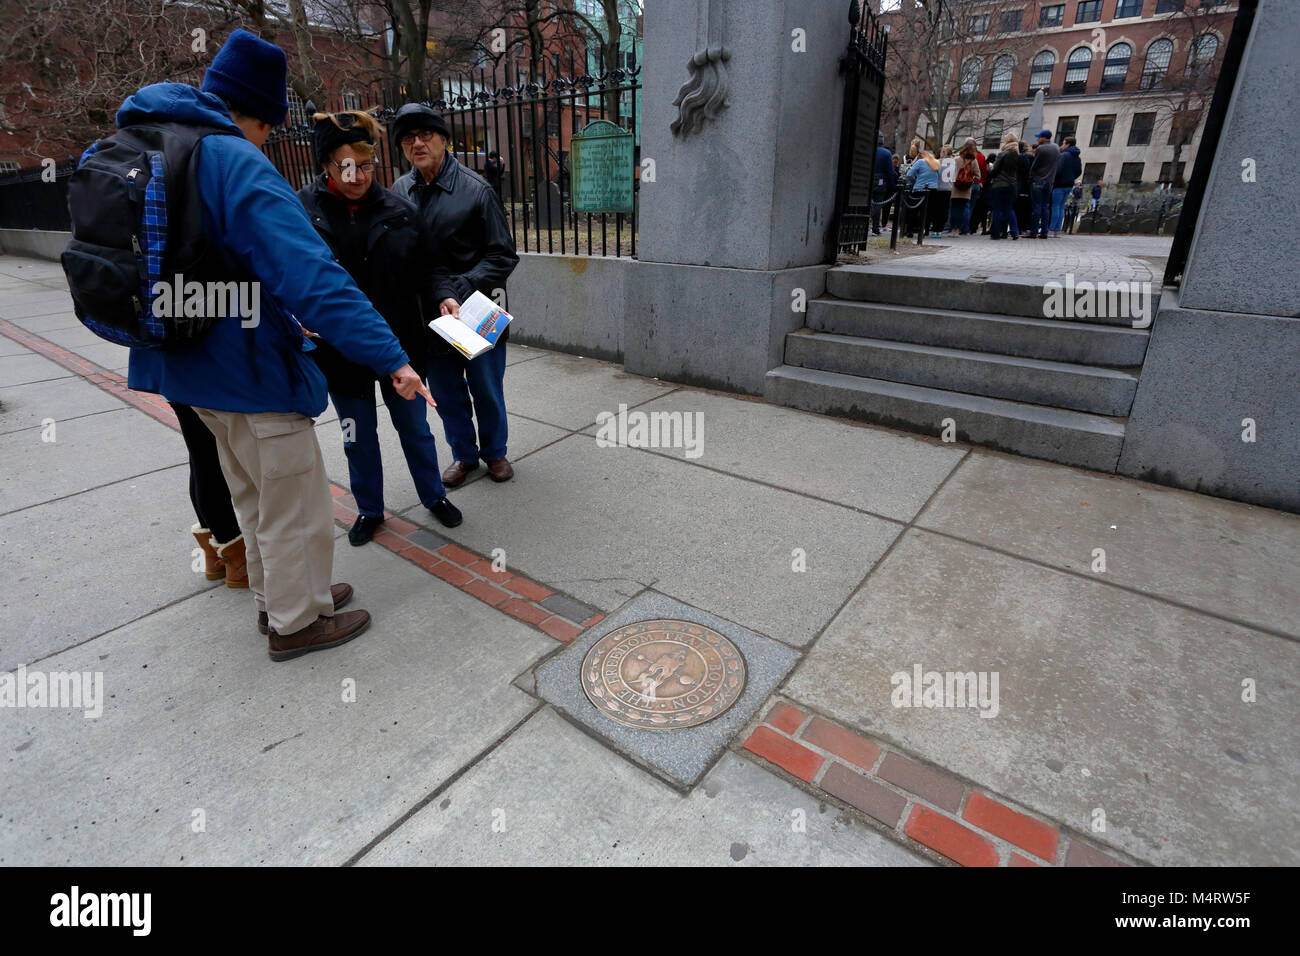 Touristes pointant vers une plaque de bronze Freedom Trail marquant l'emplacement d'un monument célèbre, le Granary Burying Ground, Boston, Massachusetts Banque D'Images